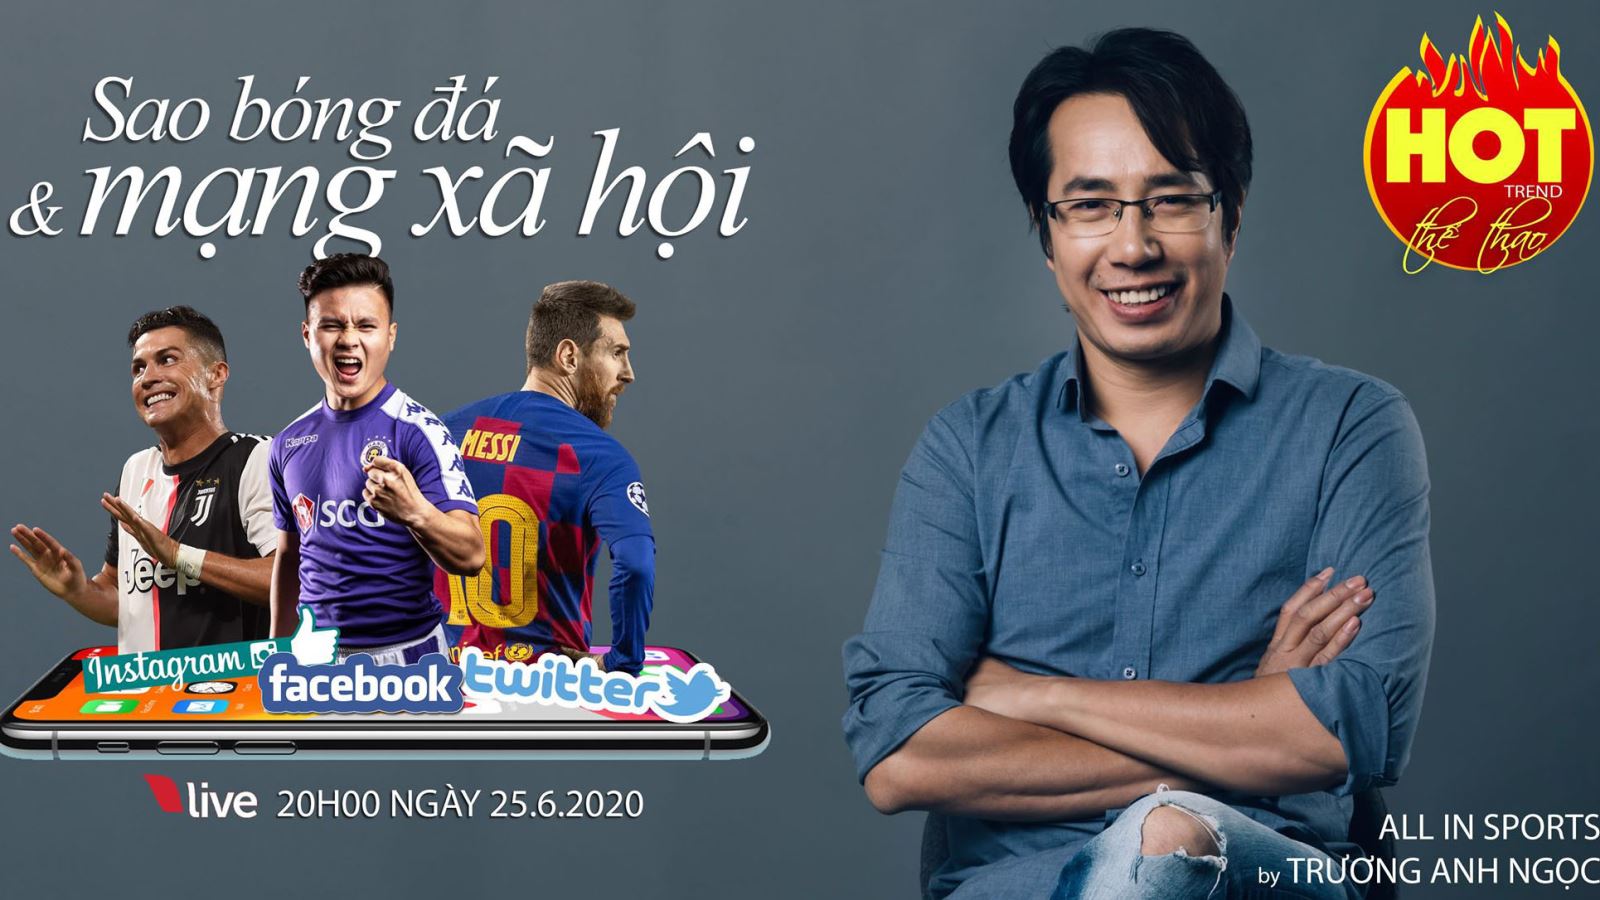 HOT TREND thể thao với BLV Anh Ngọc - số 14: Từ vụ Quang Hải đến các sao bóng đá với mạng xã hội